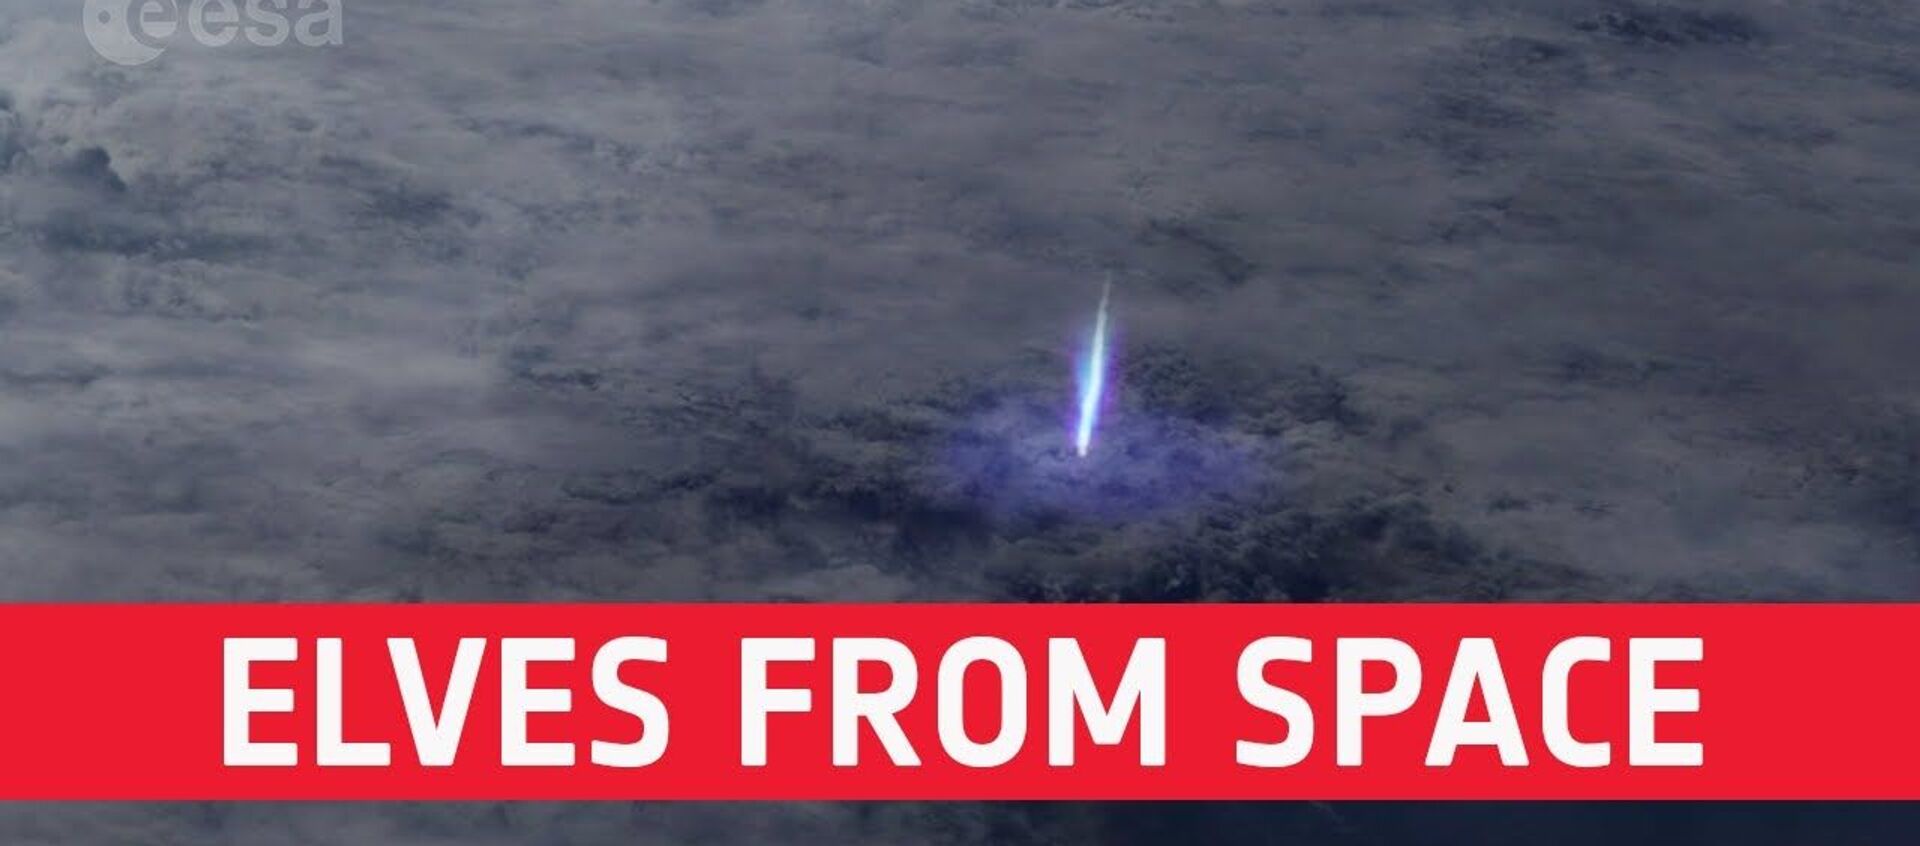 Эльфы в атмосфере: с борта МКС сняли редкое явление - Sputnik Latvija, 1920, 27.01.2021